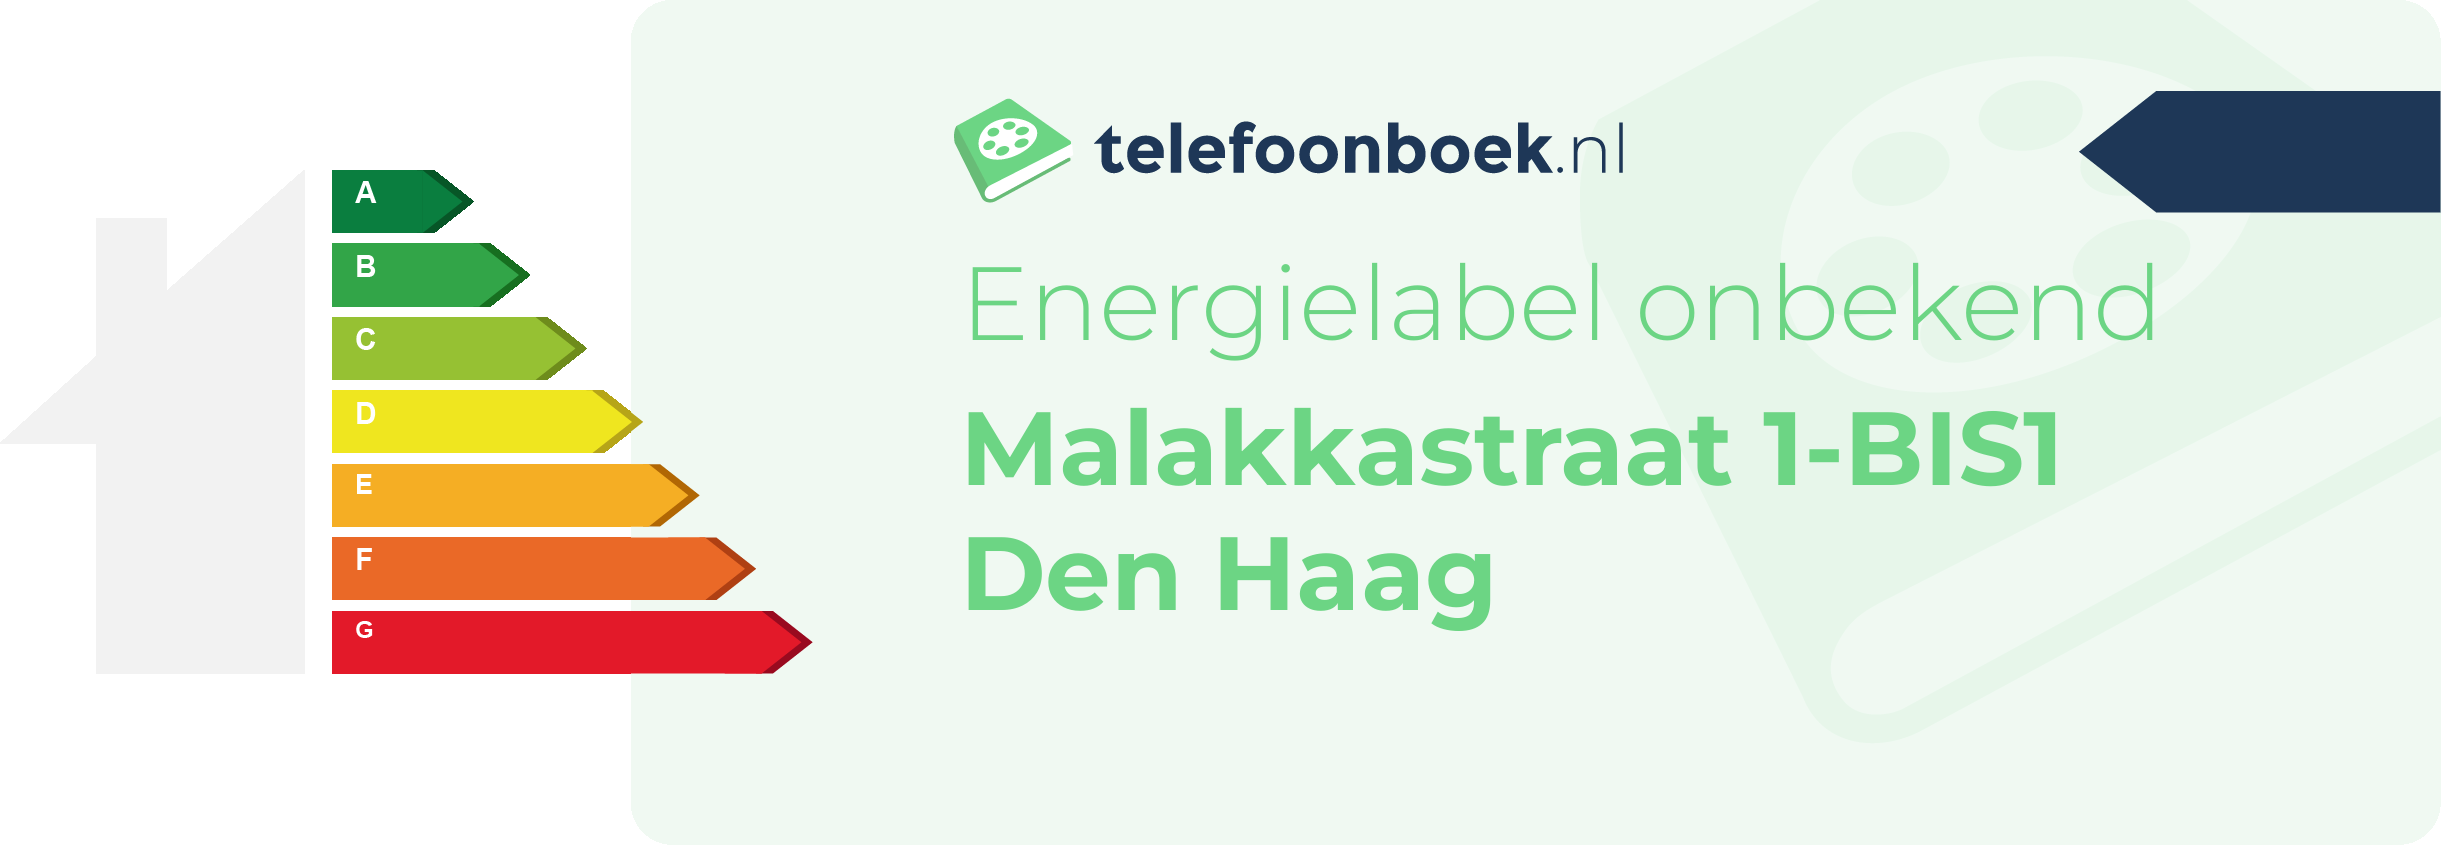 Energielabel Malakkastraat 1-BIS1 Den Haag